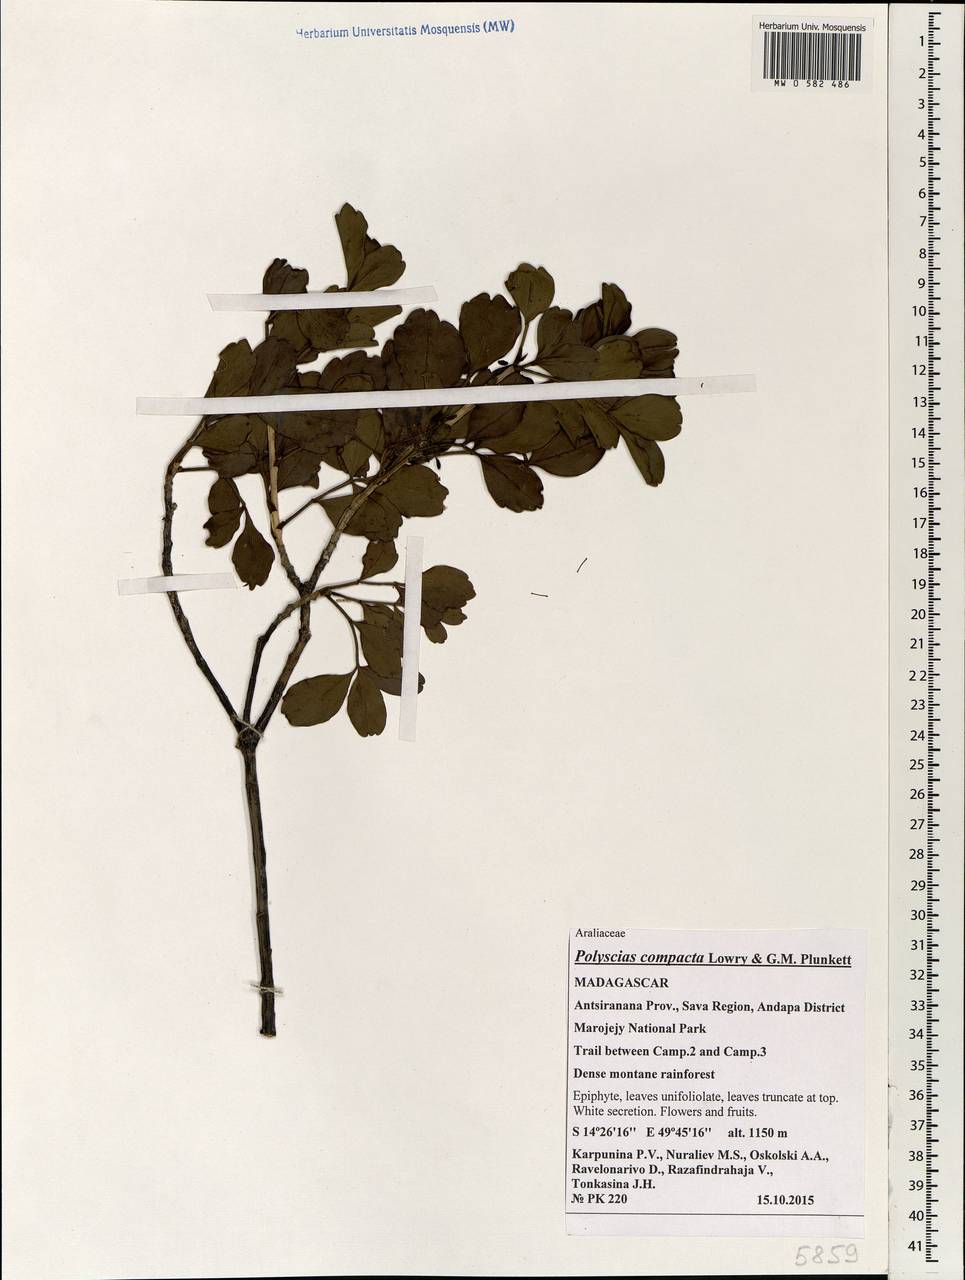 Polyscias compacta Lowry & G.M.Plunkett, Africa (AFR) (Madagascar)